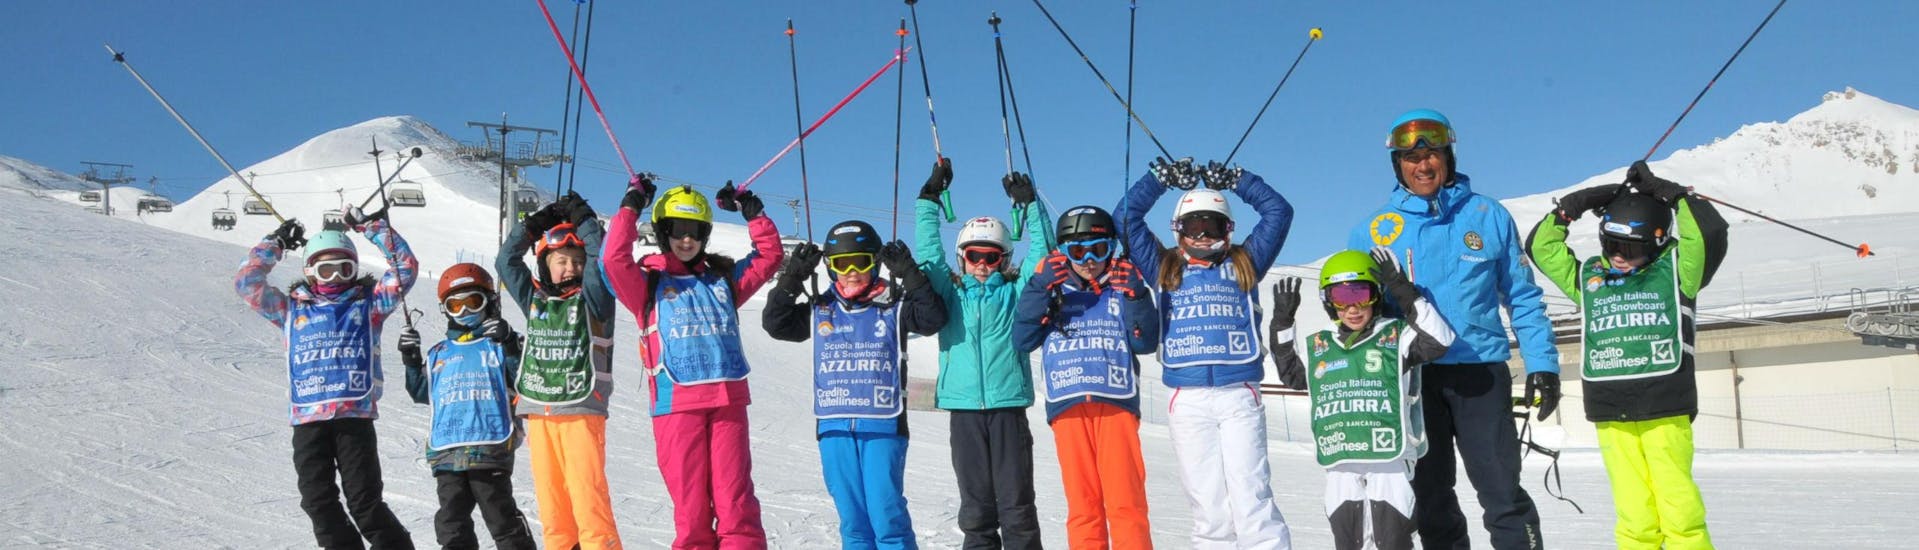 Un grupo de niños disfruta de sus Clases de esquí para niños (4-14 años) - Día completo con la escuela de esquí Scuola di Sci Azzurra Livigno en las pistas de esquí de Livigno.